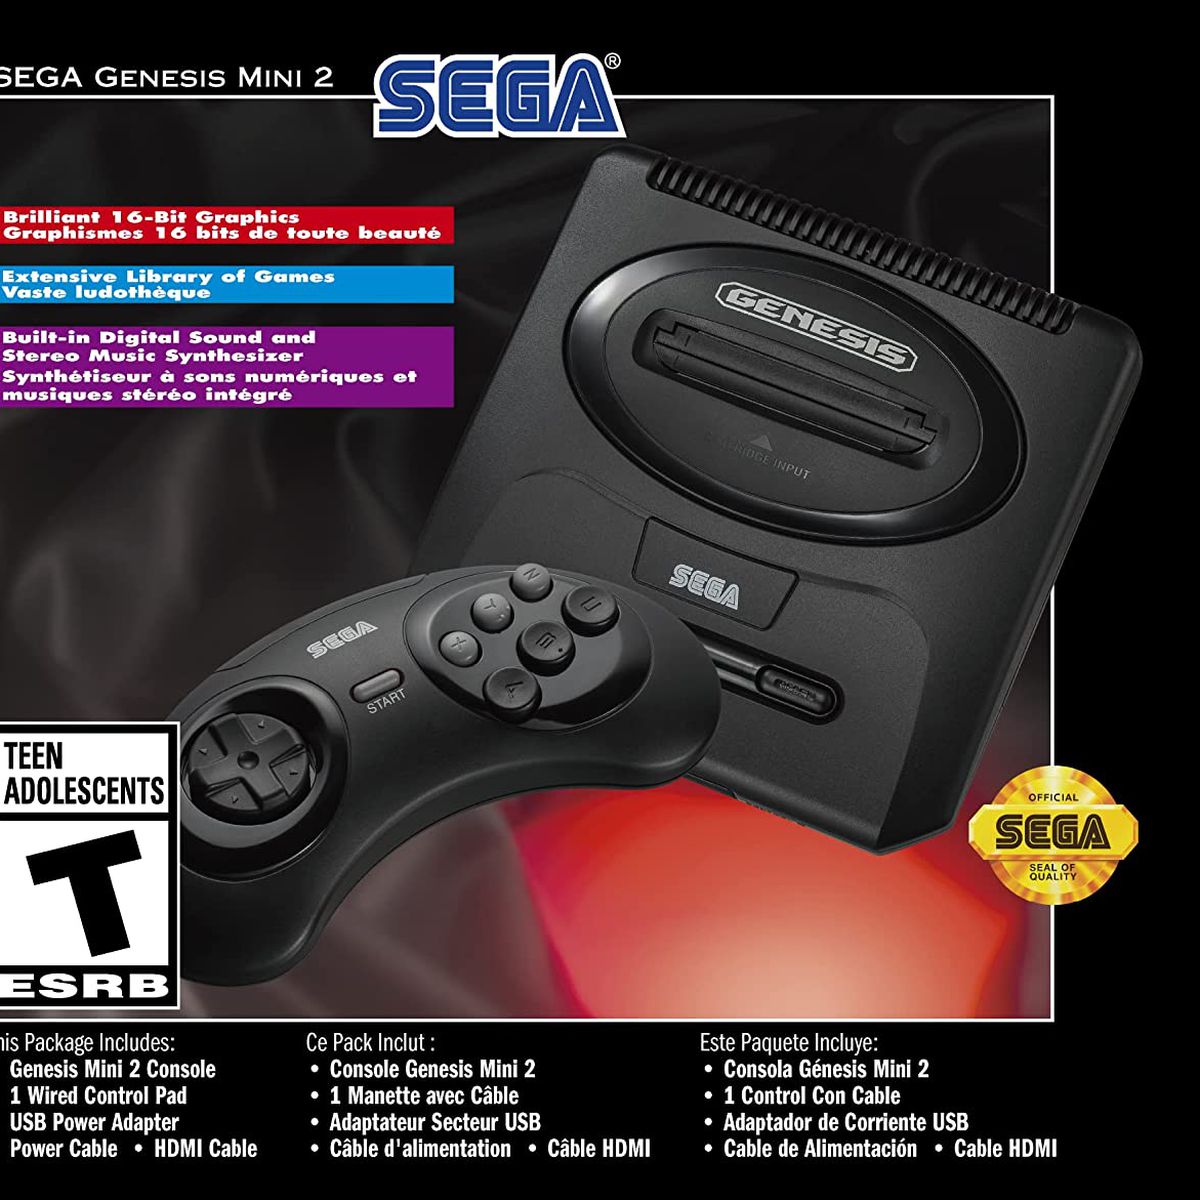 product packaging for the Sega Genesis Mini 2